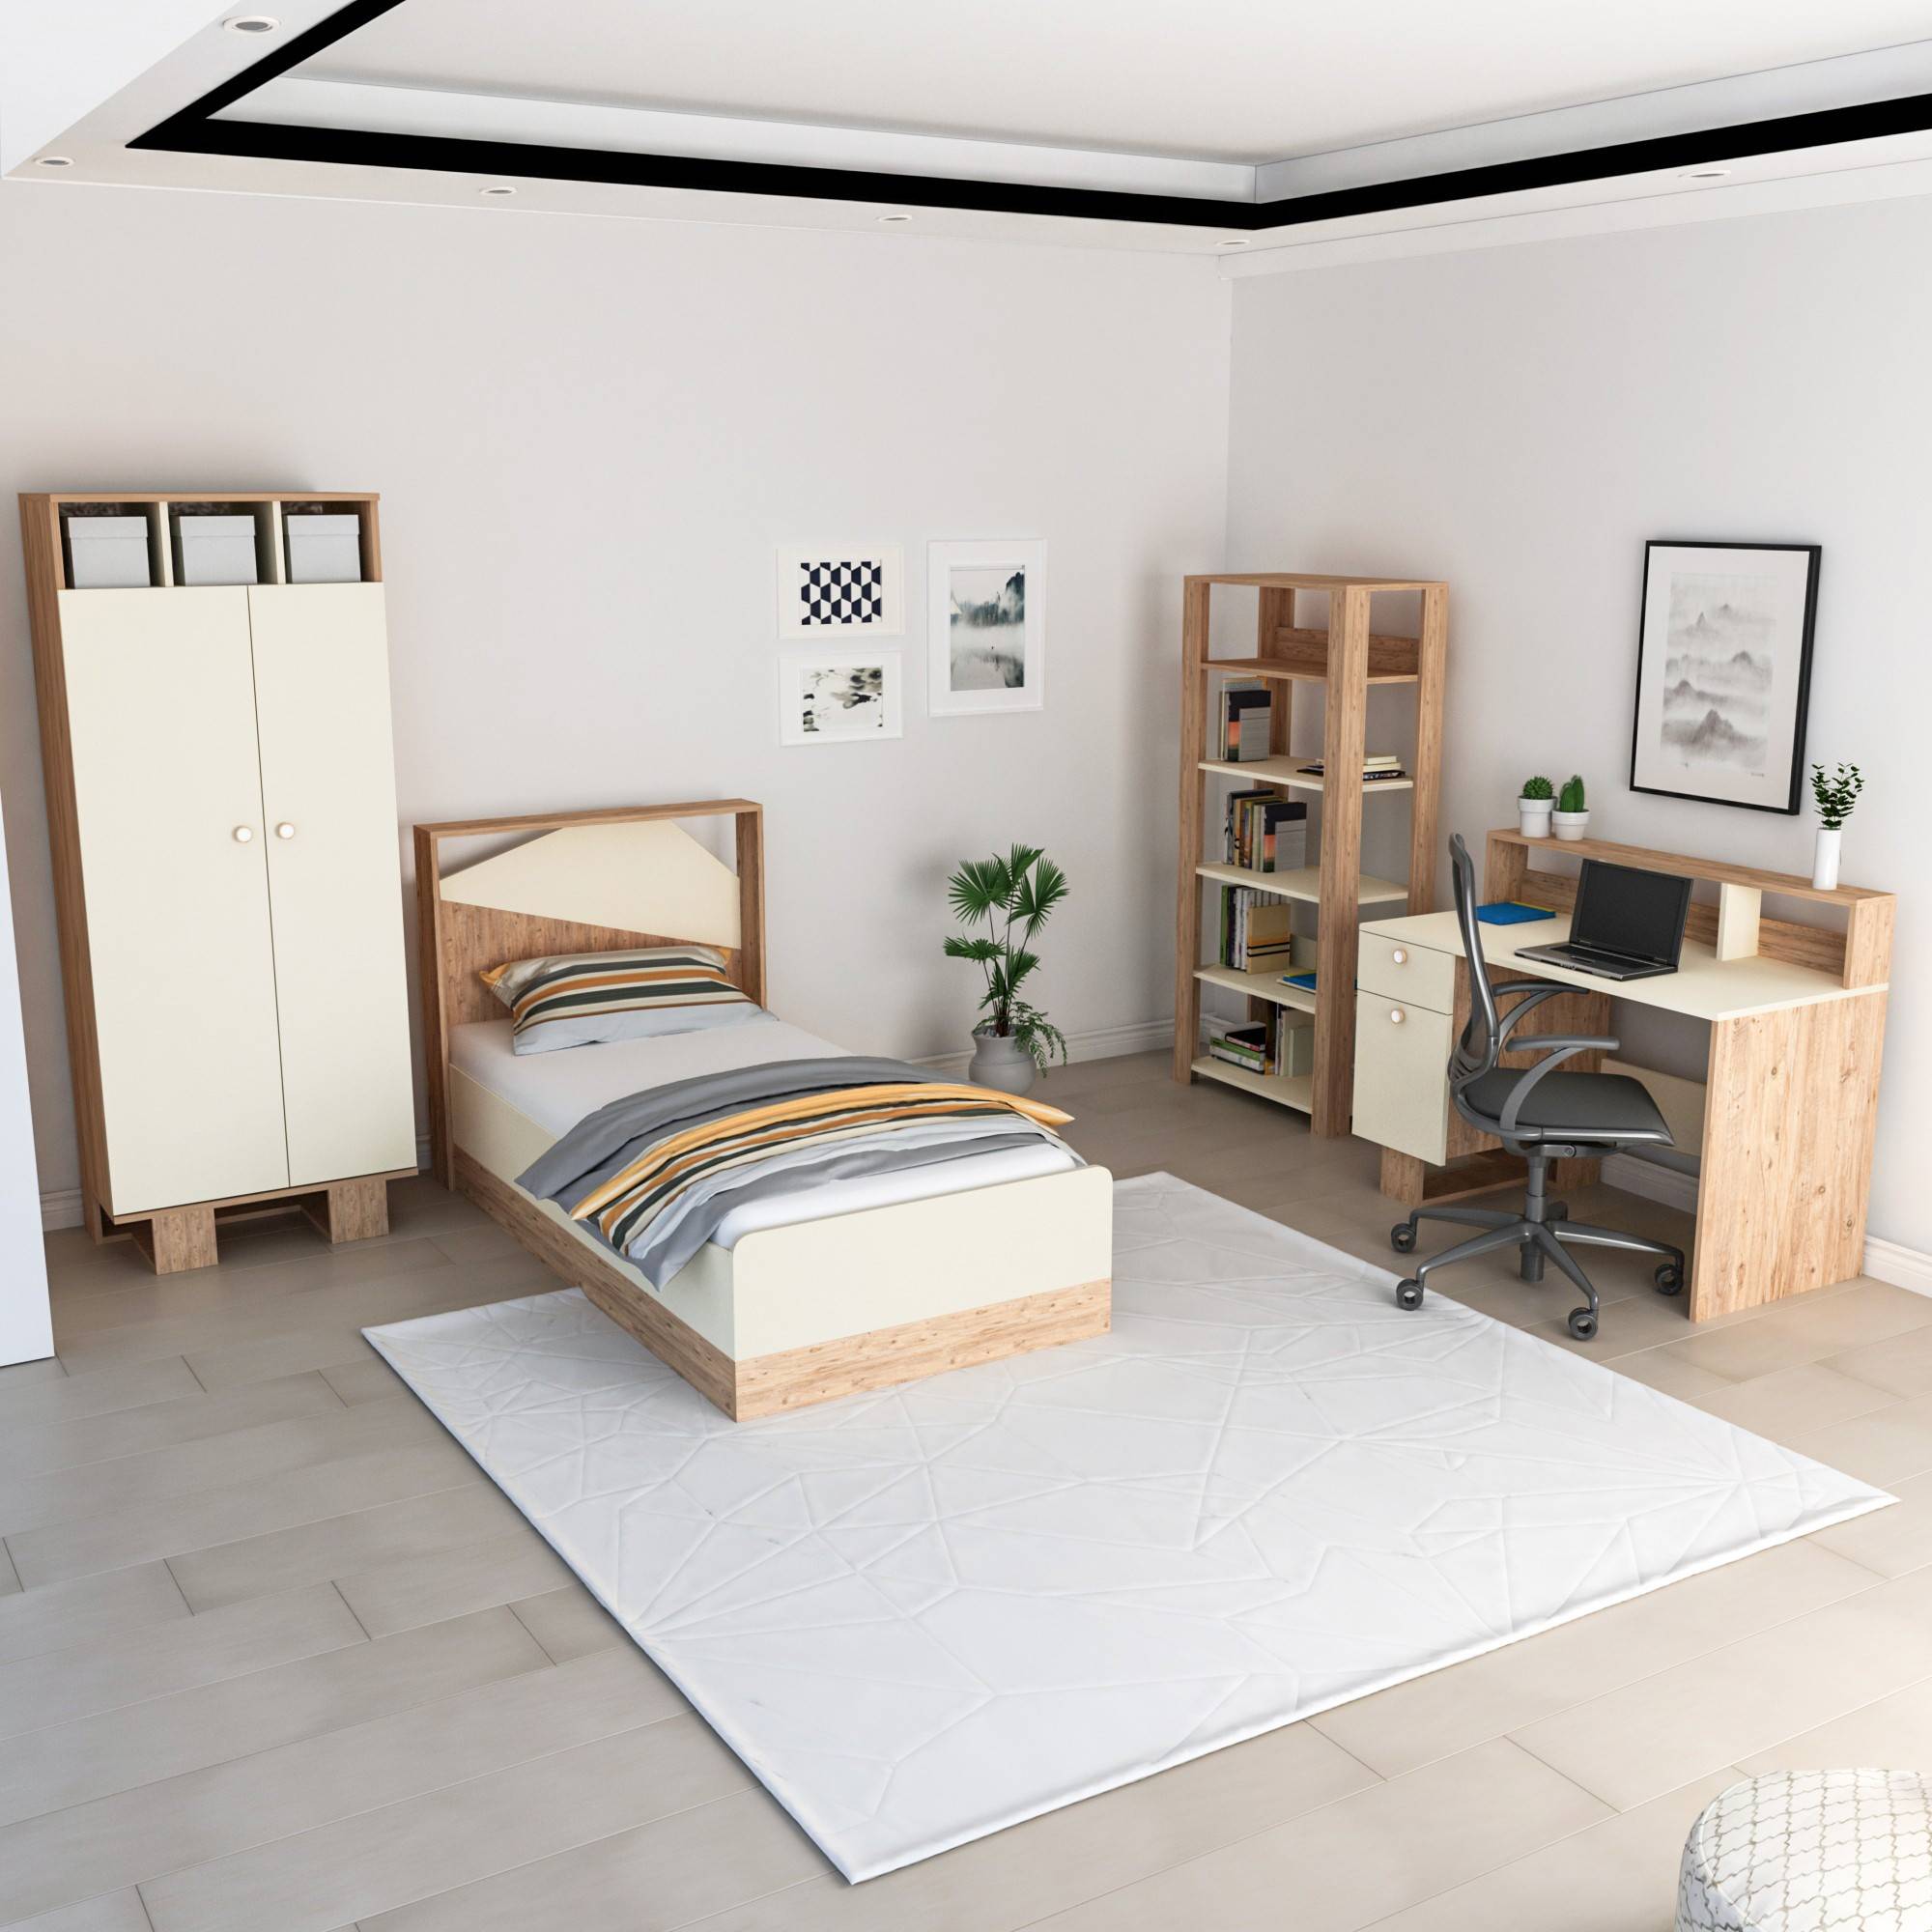 Fajah kinderkamer met bed 90x190cm, kledingkast, bureau en boekenkast Licht hout en Beige